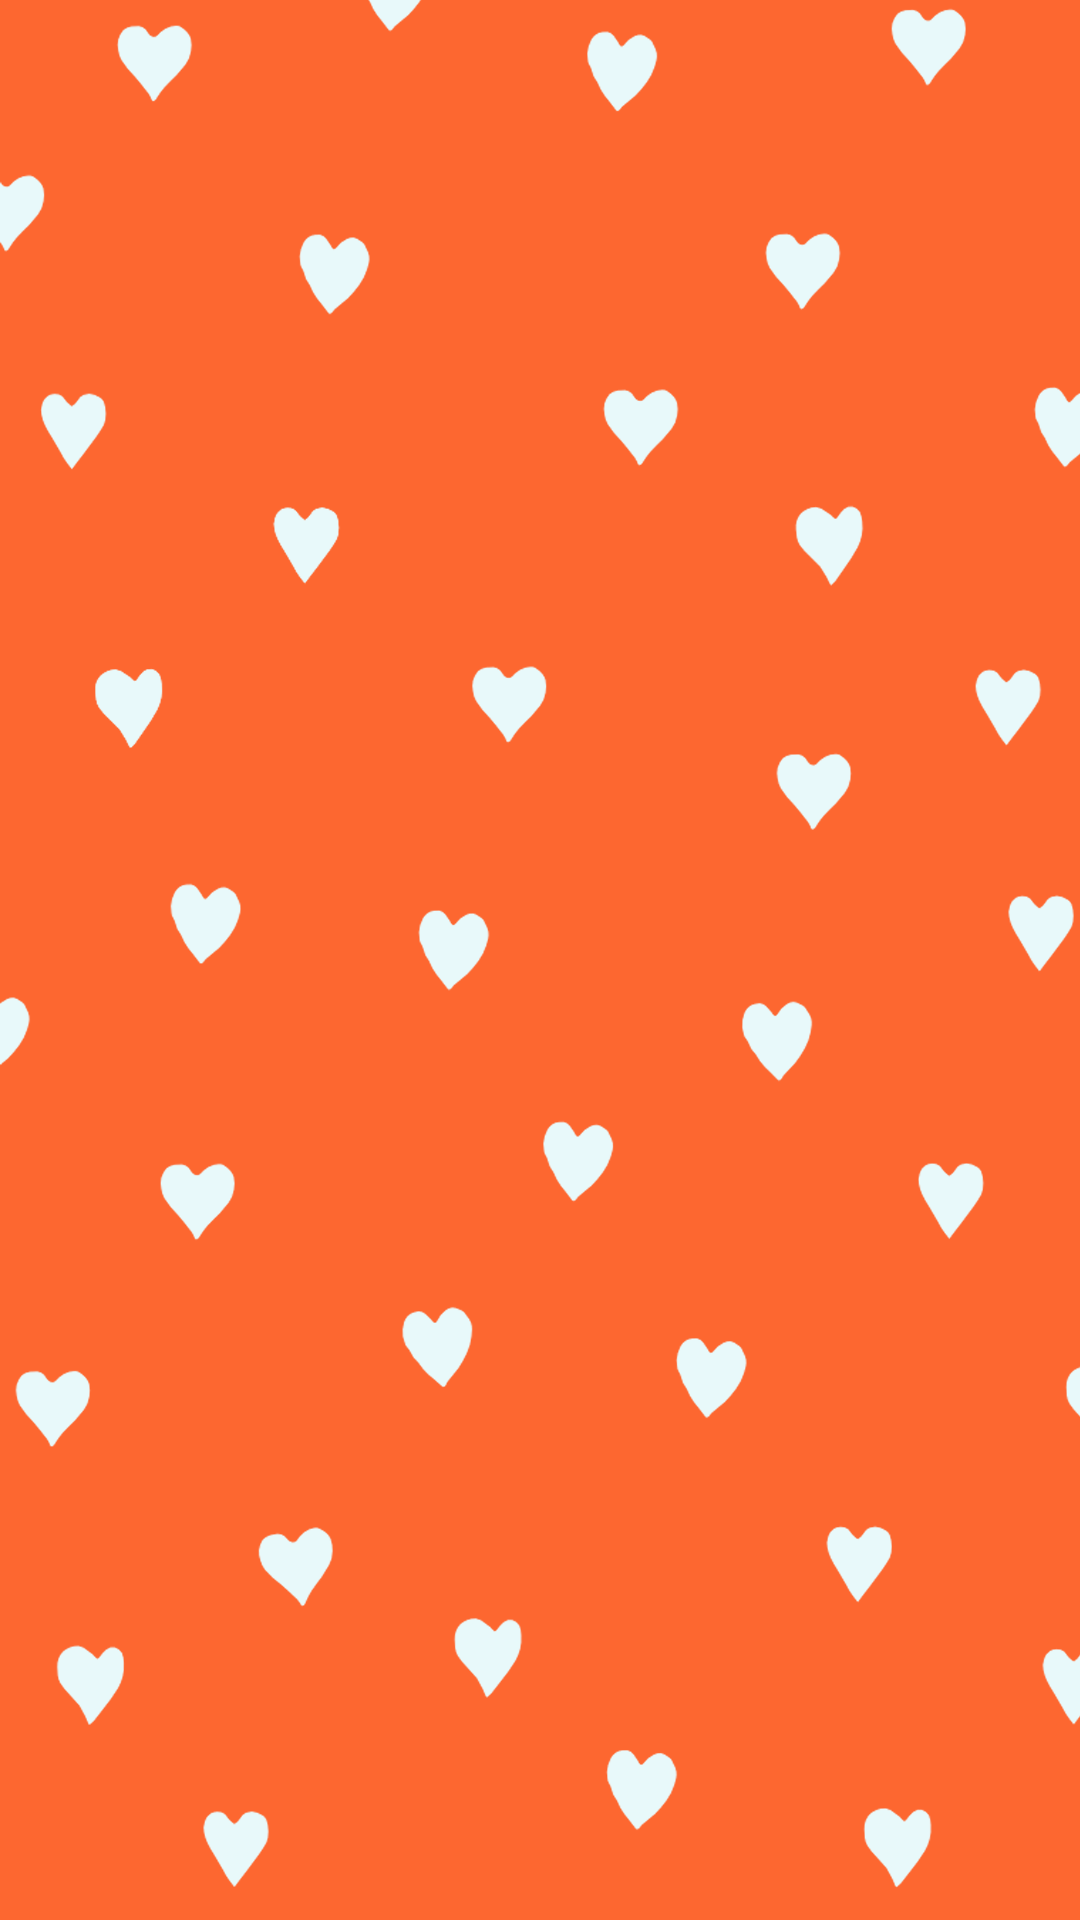 Hình nền trái tim cam sẽ mang đến cho bạn cảm giác ấm áp và tình yêu. Với hình ảnh này, bạn sẽ cảm thấy như được bao quanh bởi những trái tim ấm áp và đáng yêu. Hãy cùng đắm chìm trong sự ngọt ngào của màu cam và trái tim.